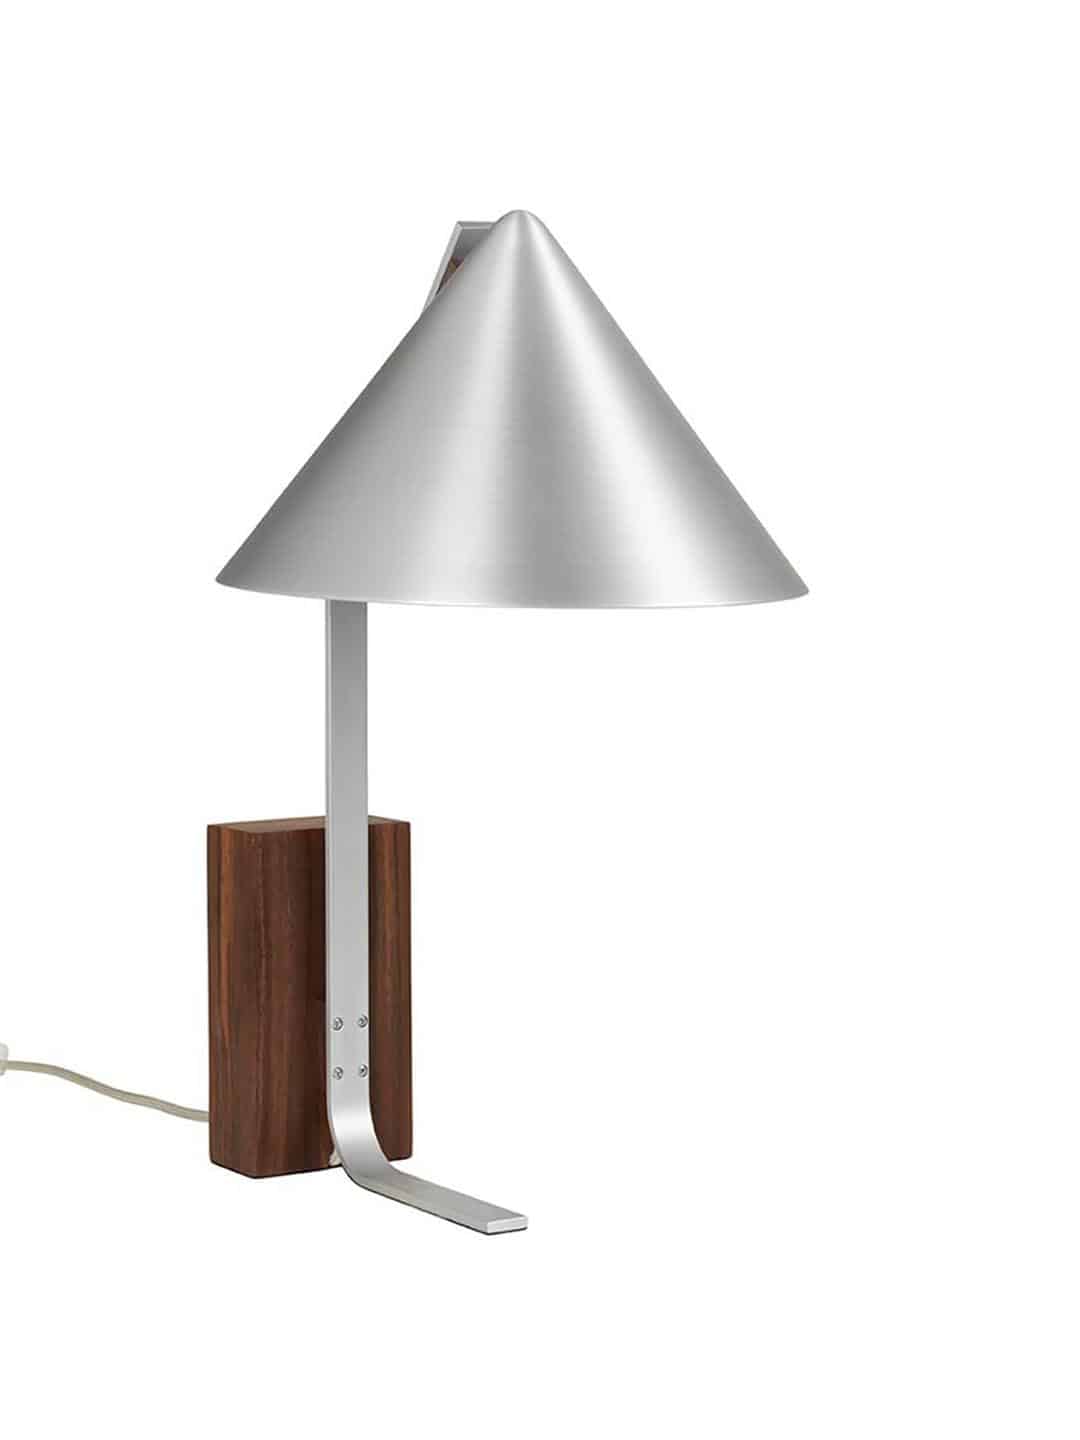 Скандинавская металлическая настольная лампа Kristina Dam Cone серого цвета